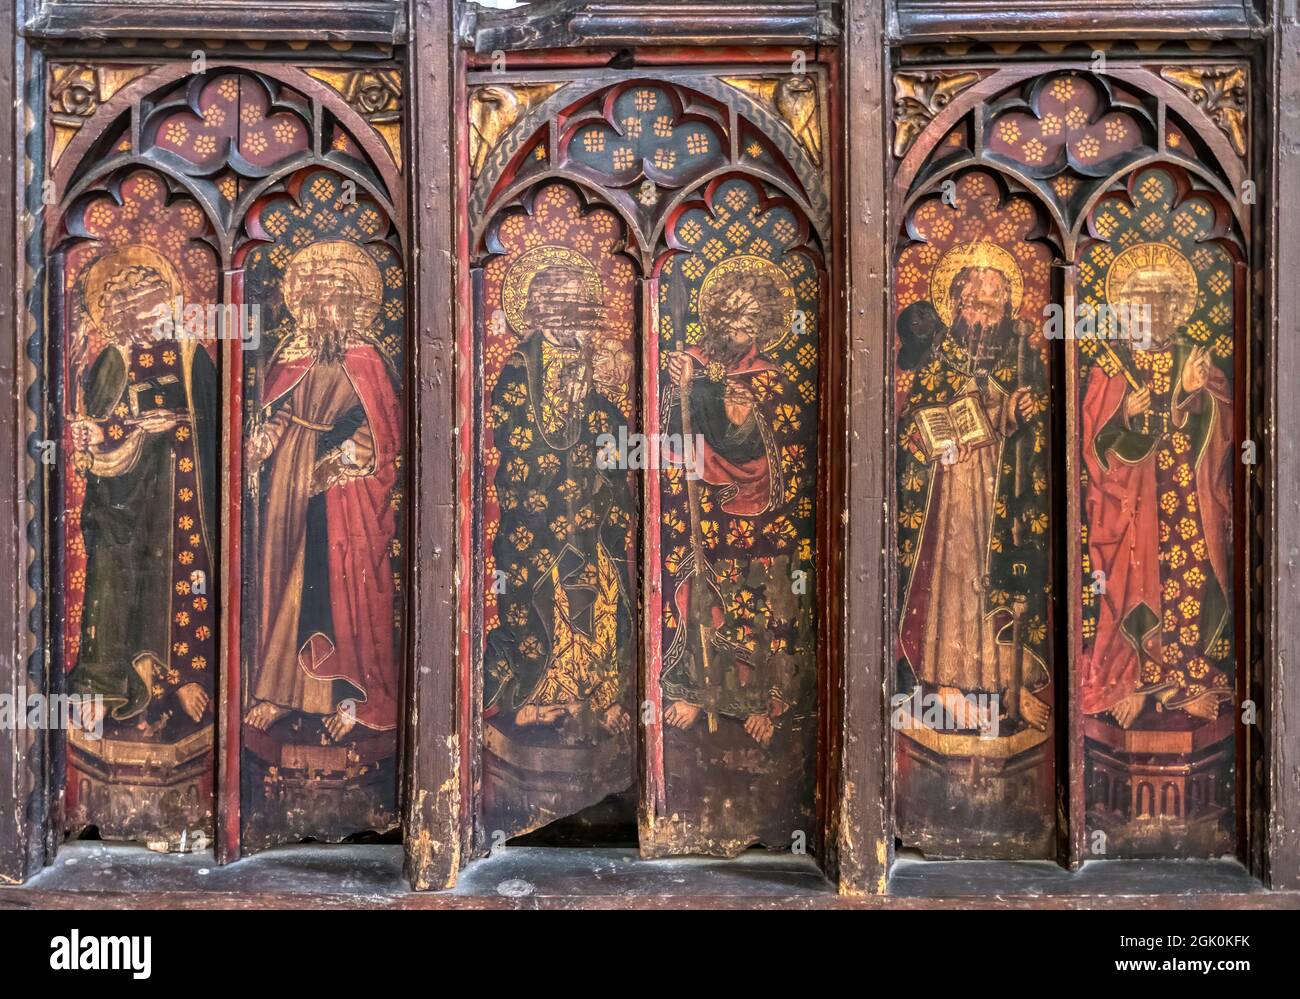 Les seuls panneaux restants de l'écran de rood médiéval à l'église All Saints, la Lynn du roi. Détails dans Description. Banque D'Images